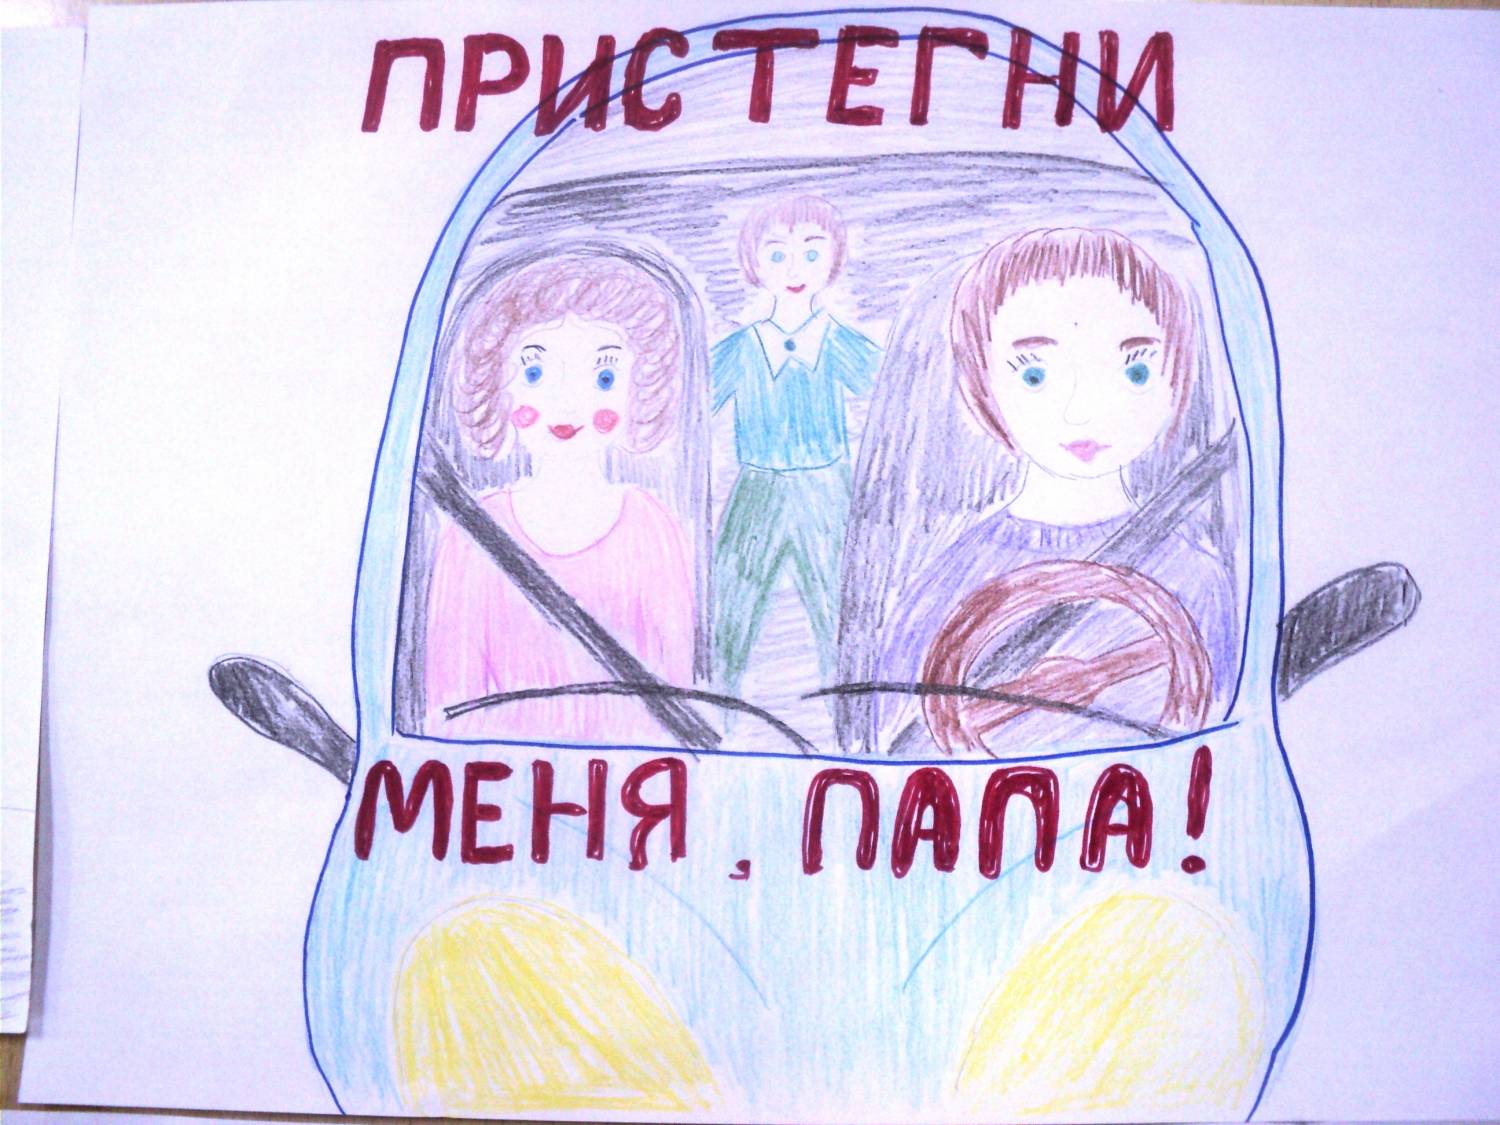 Плакат соблюдение правил. Ребёнок главный пассажир рисунок. Плакат призывающий к соблюдению правил безопасности в транспорте. Рисунок на тему ребенок главный пассажир. Плакат кобоюдение правилбезопвсности в траснпопте.